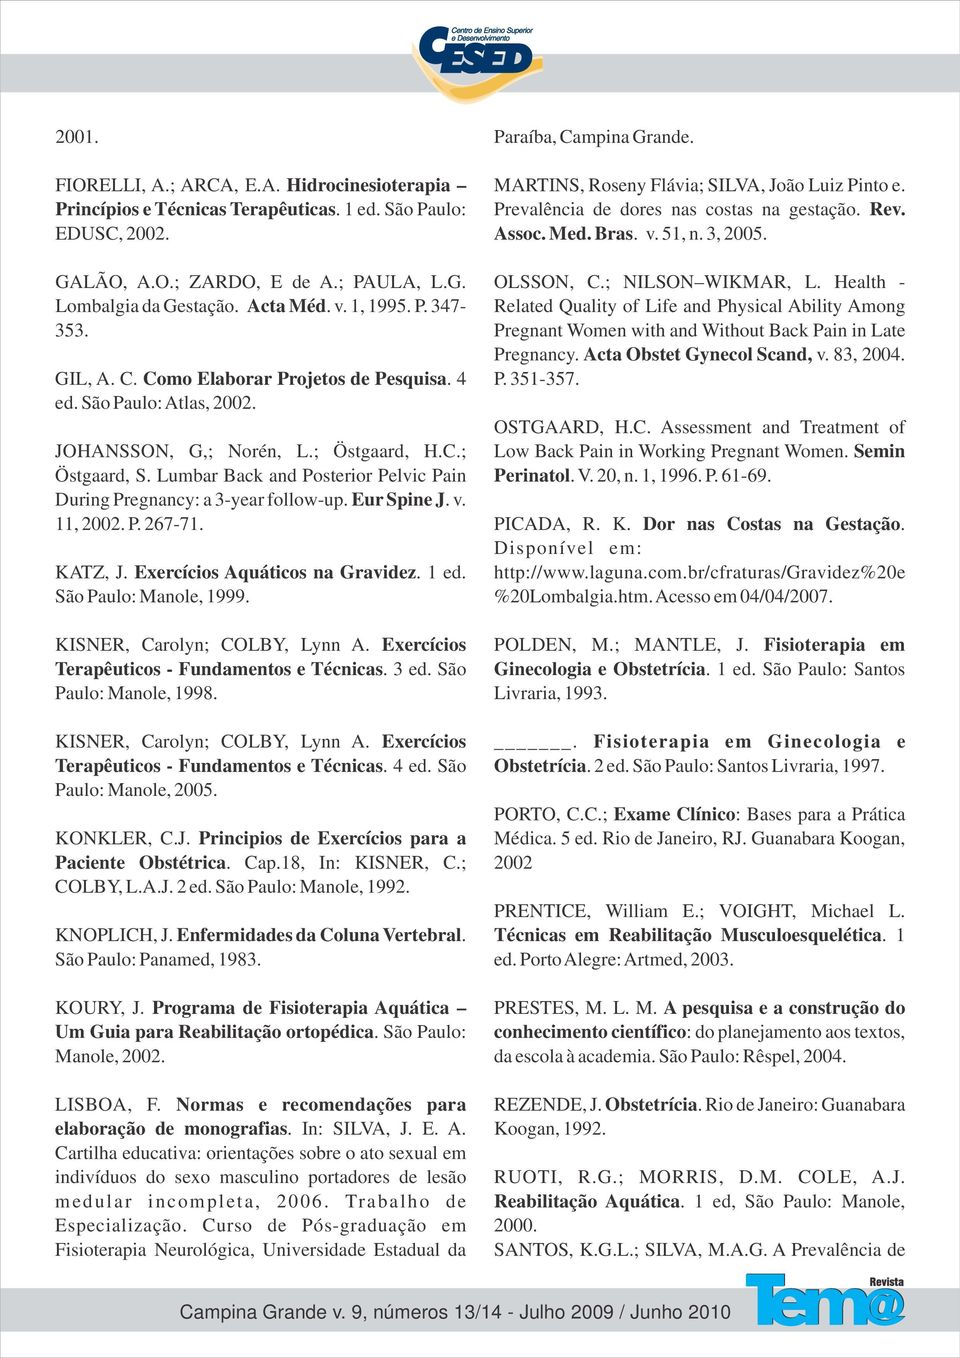 Lumbar Back and Posterior Pelvic Pain During Pregnancy: a 3-year follow-up. Eur Spine J. v. 11, 2002. P. 267-71. KATZ, J. Exercícios Aquáticos na Gravidez. 1 ed. São Paulo: Manole, 1999.